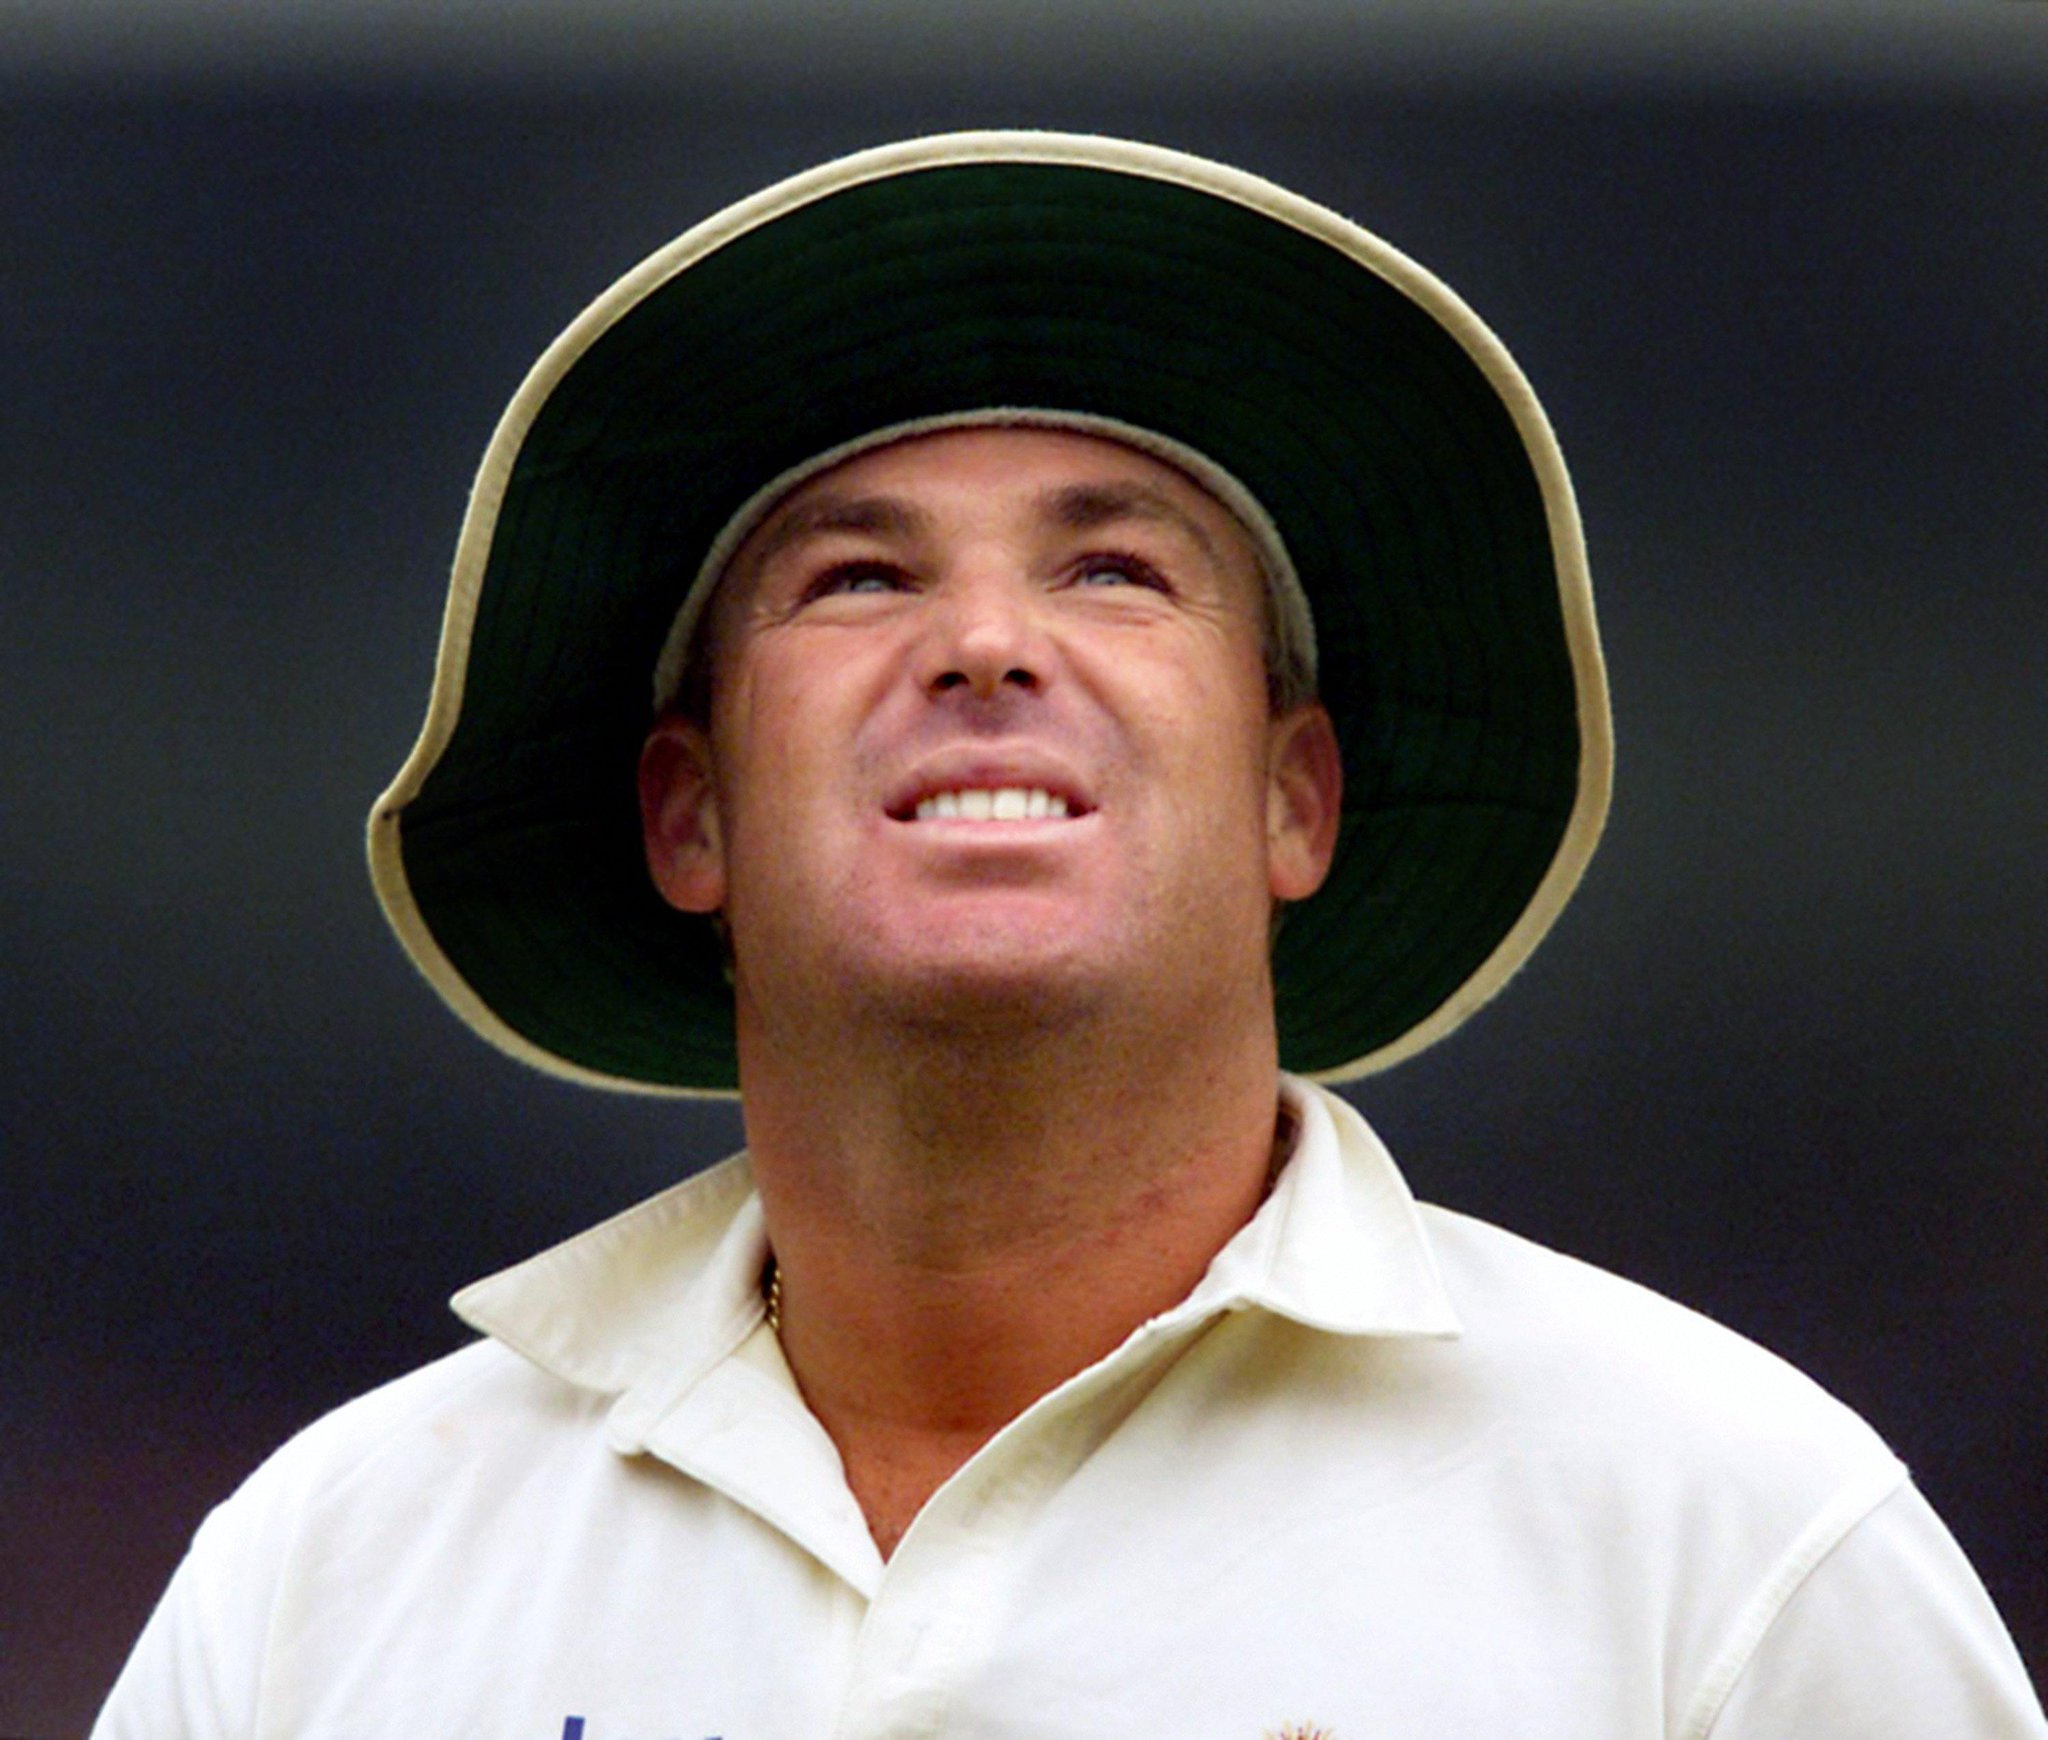 Australia cricket great Shane Warne dies aged 52